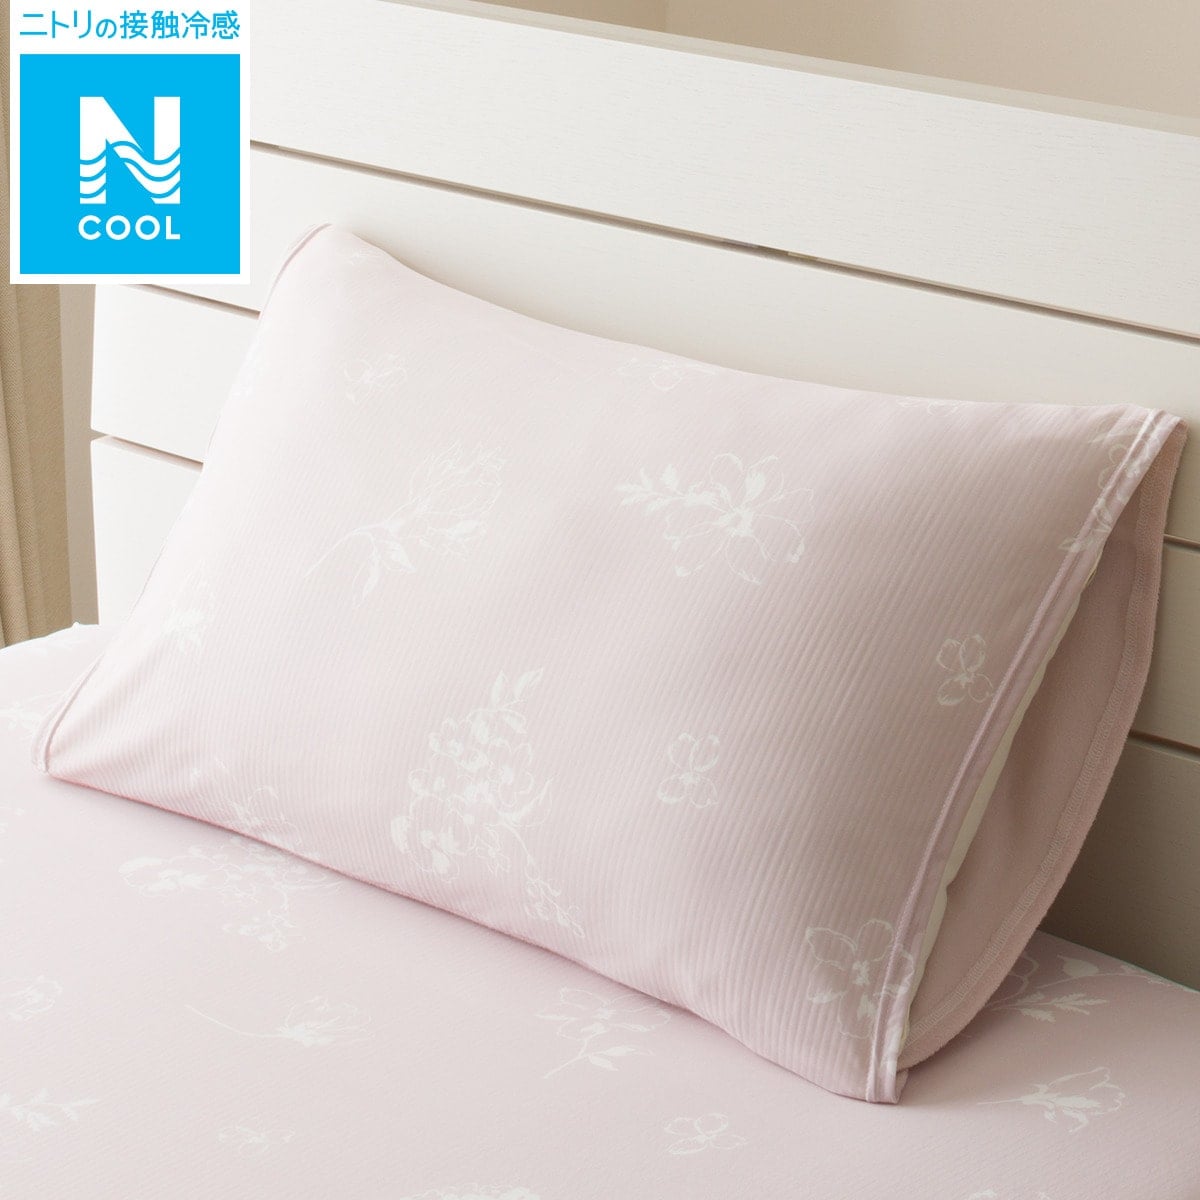 【デコホーム商品】のびてピタッとフィットする枕カバー(Nクール ハナ N3-4) ニトリ